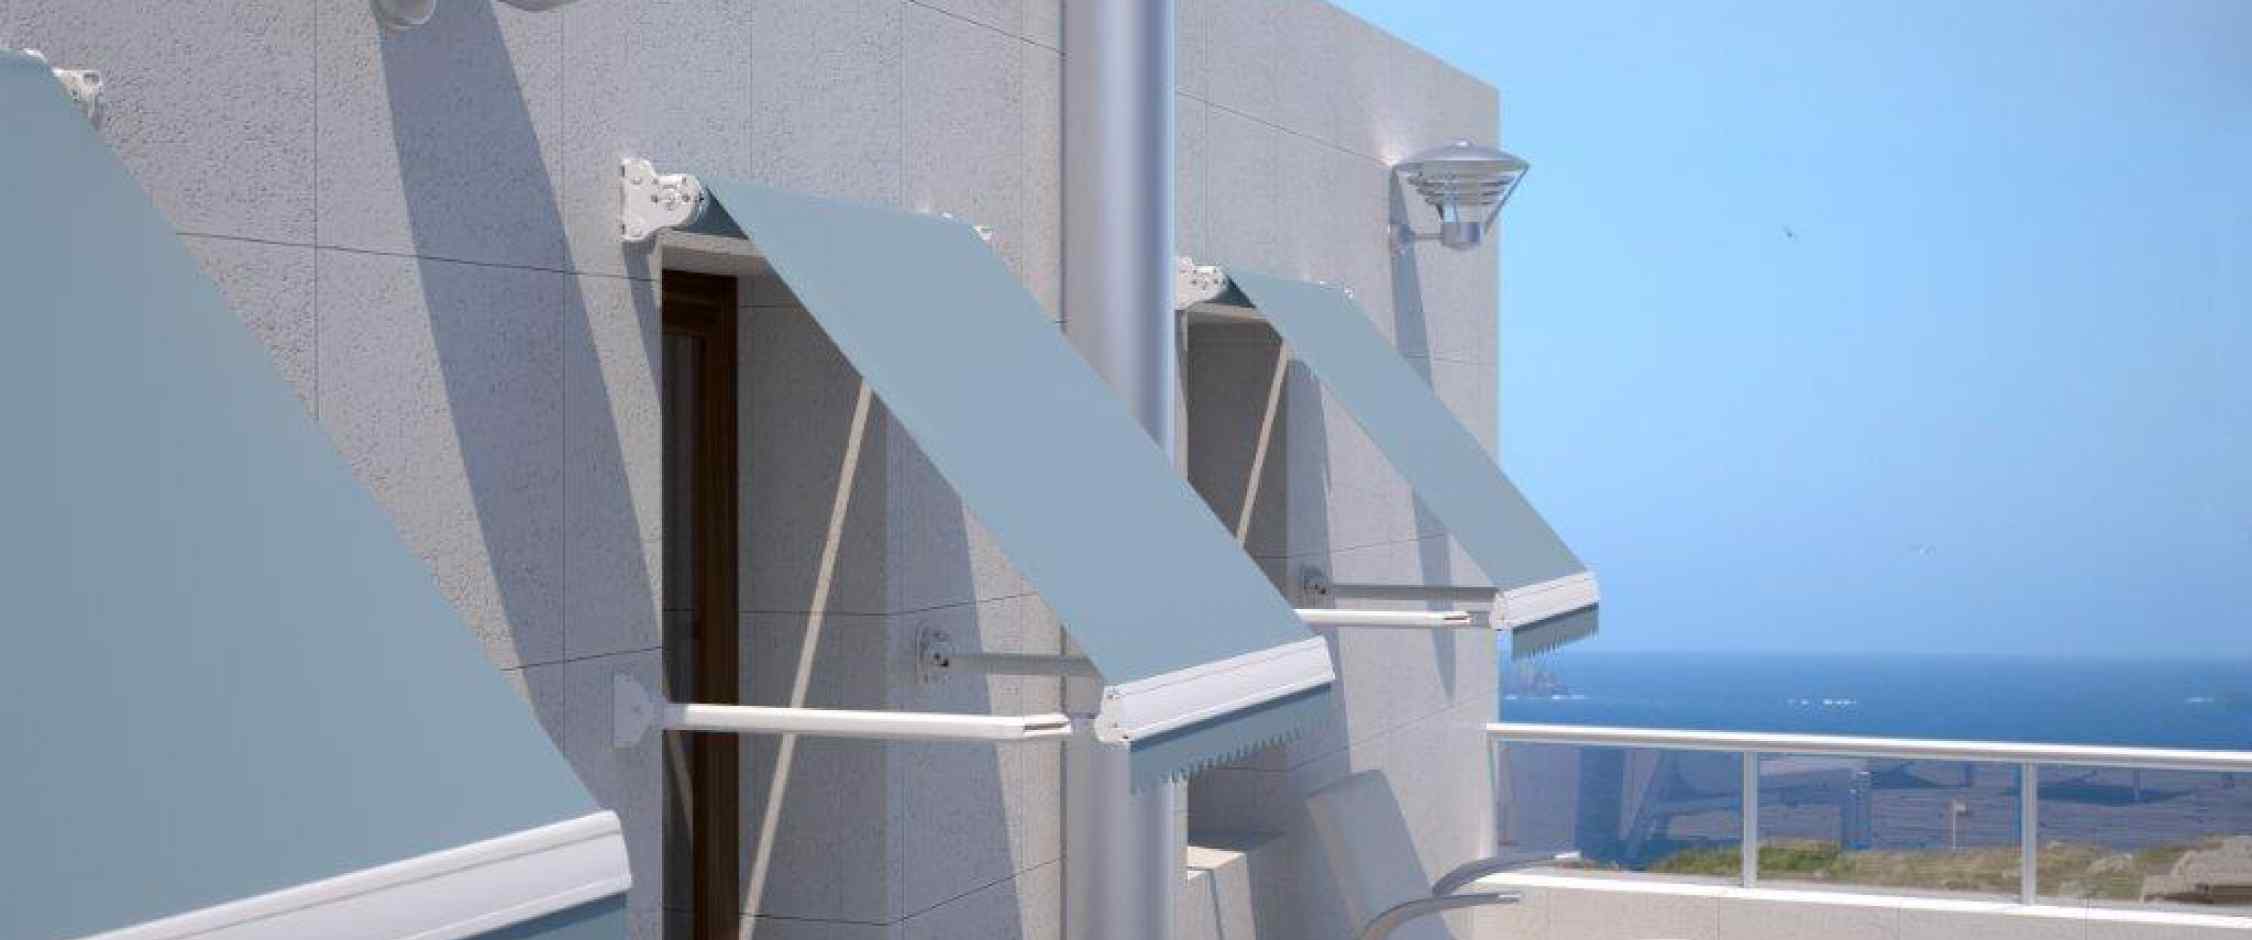 Toldo sistema brazo punto recto modelo Indico para protección solar de ventanas y sistema de brazos antiviento. Para mayor seguridad apertura y cierre mediante manivela o motor.